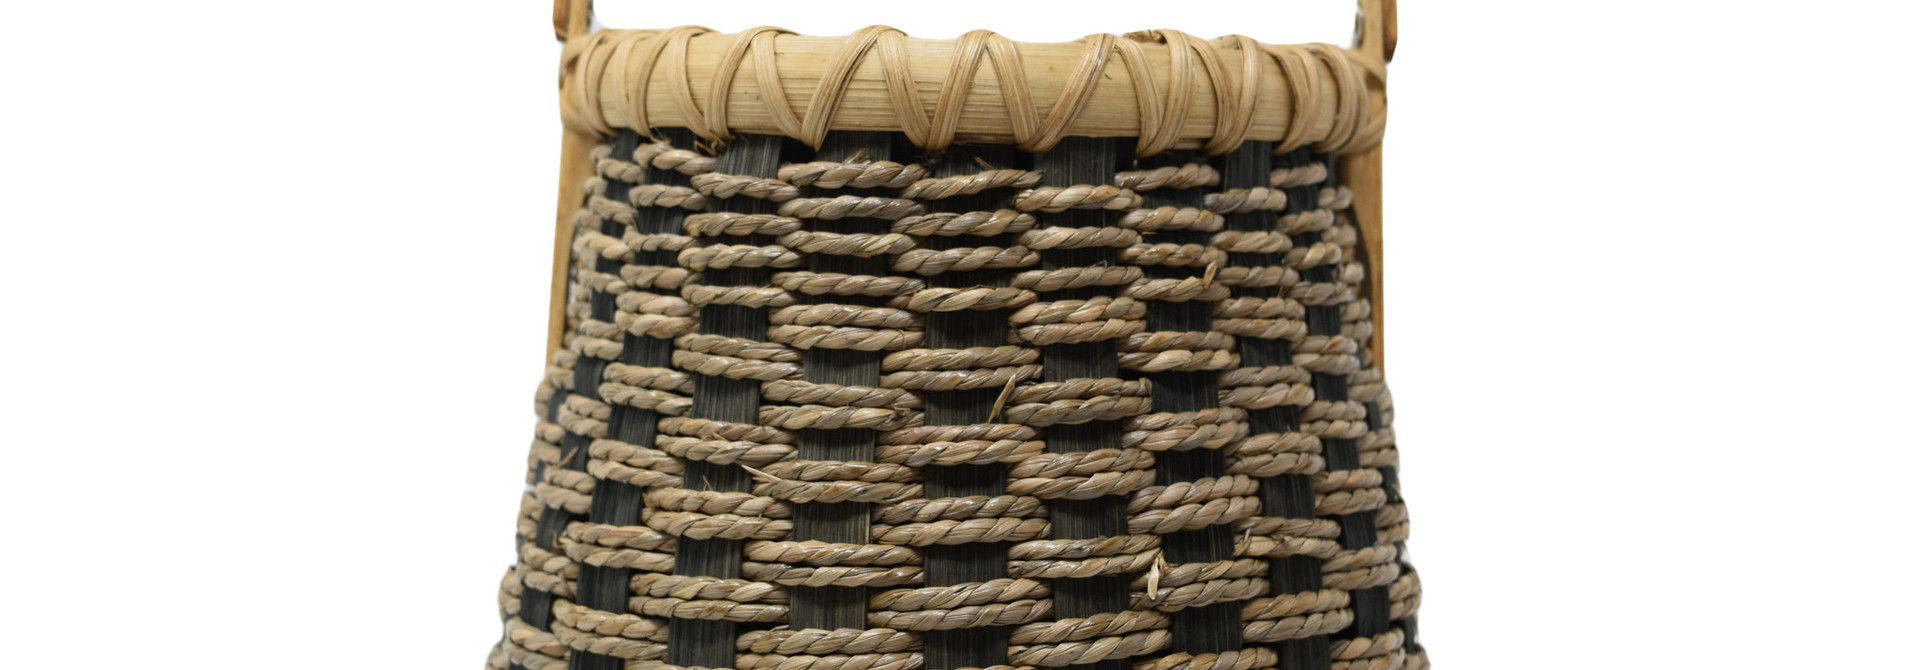 Seagrass Bucket Basket